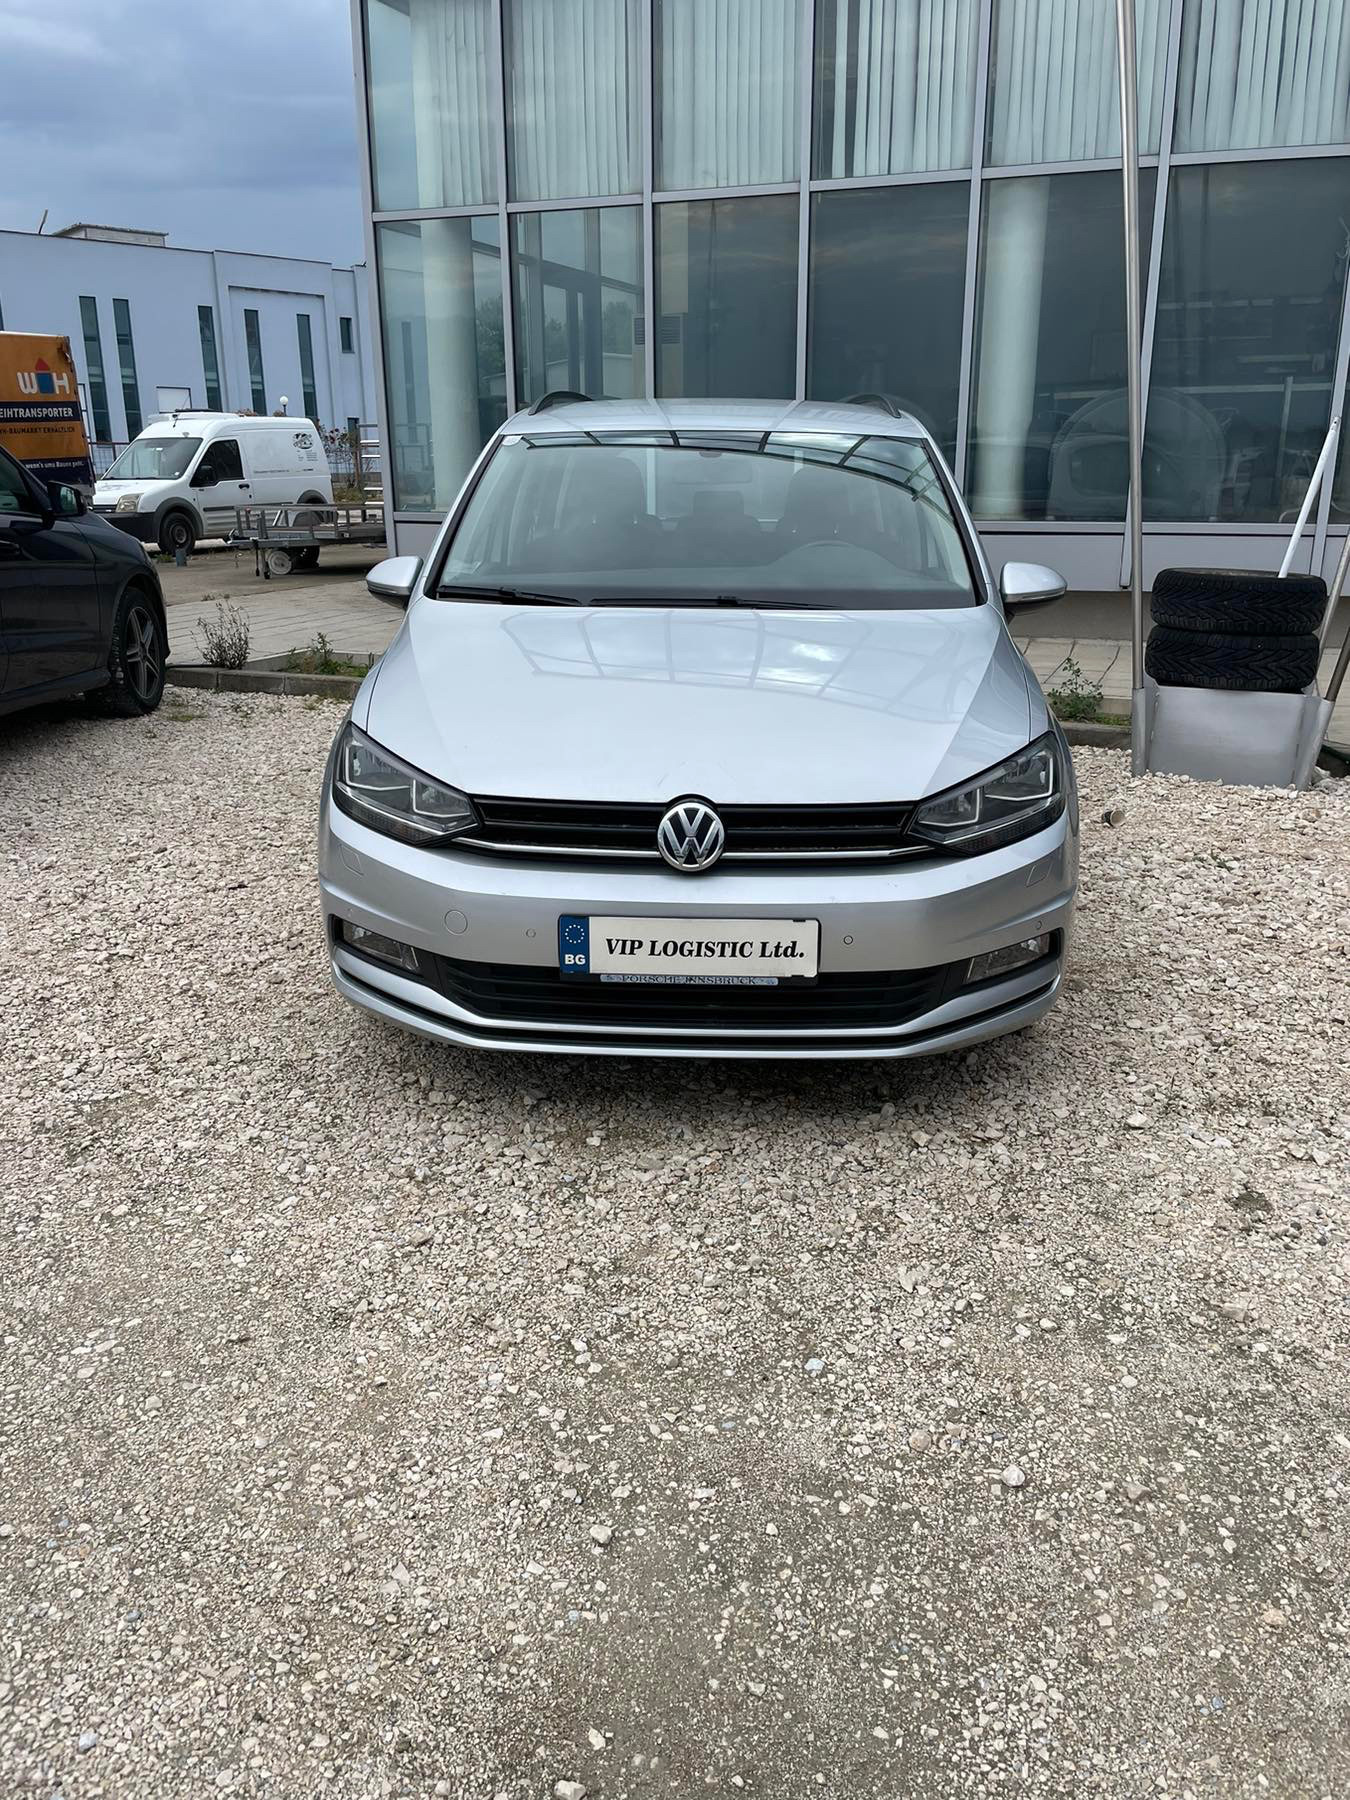 VW Touran 1.6tdi закупен от представителството на фолксваген - изображение 1